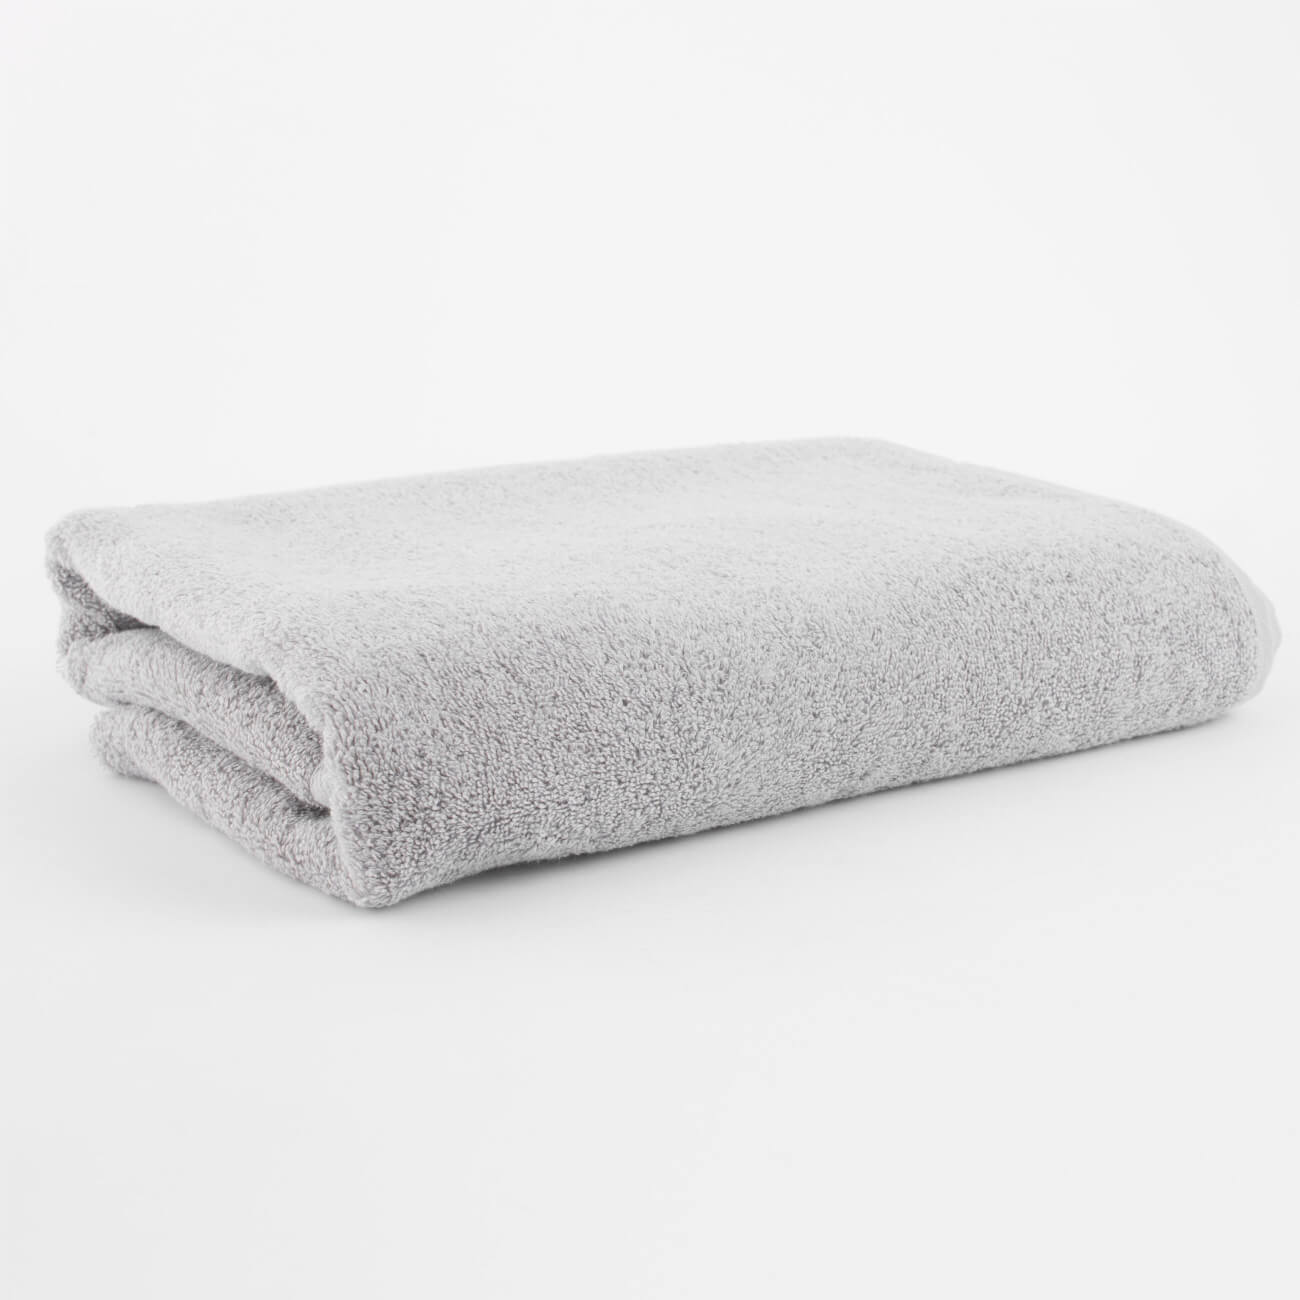 Полотенце, 70х140 см, хлопок, светло-серое, Wellness натуральное бумажное полотенце tork